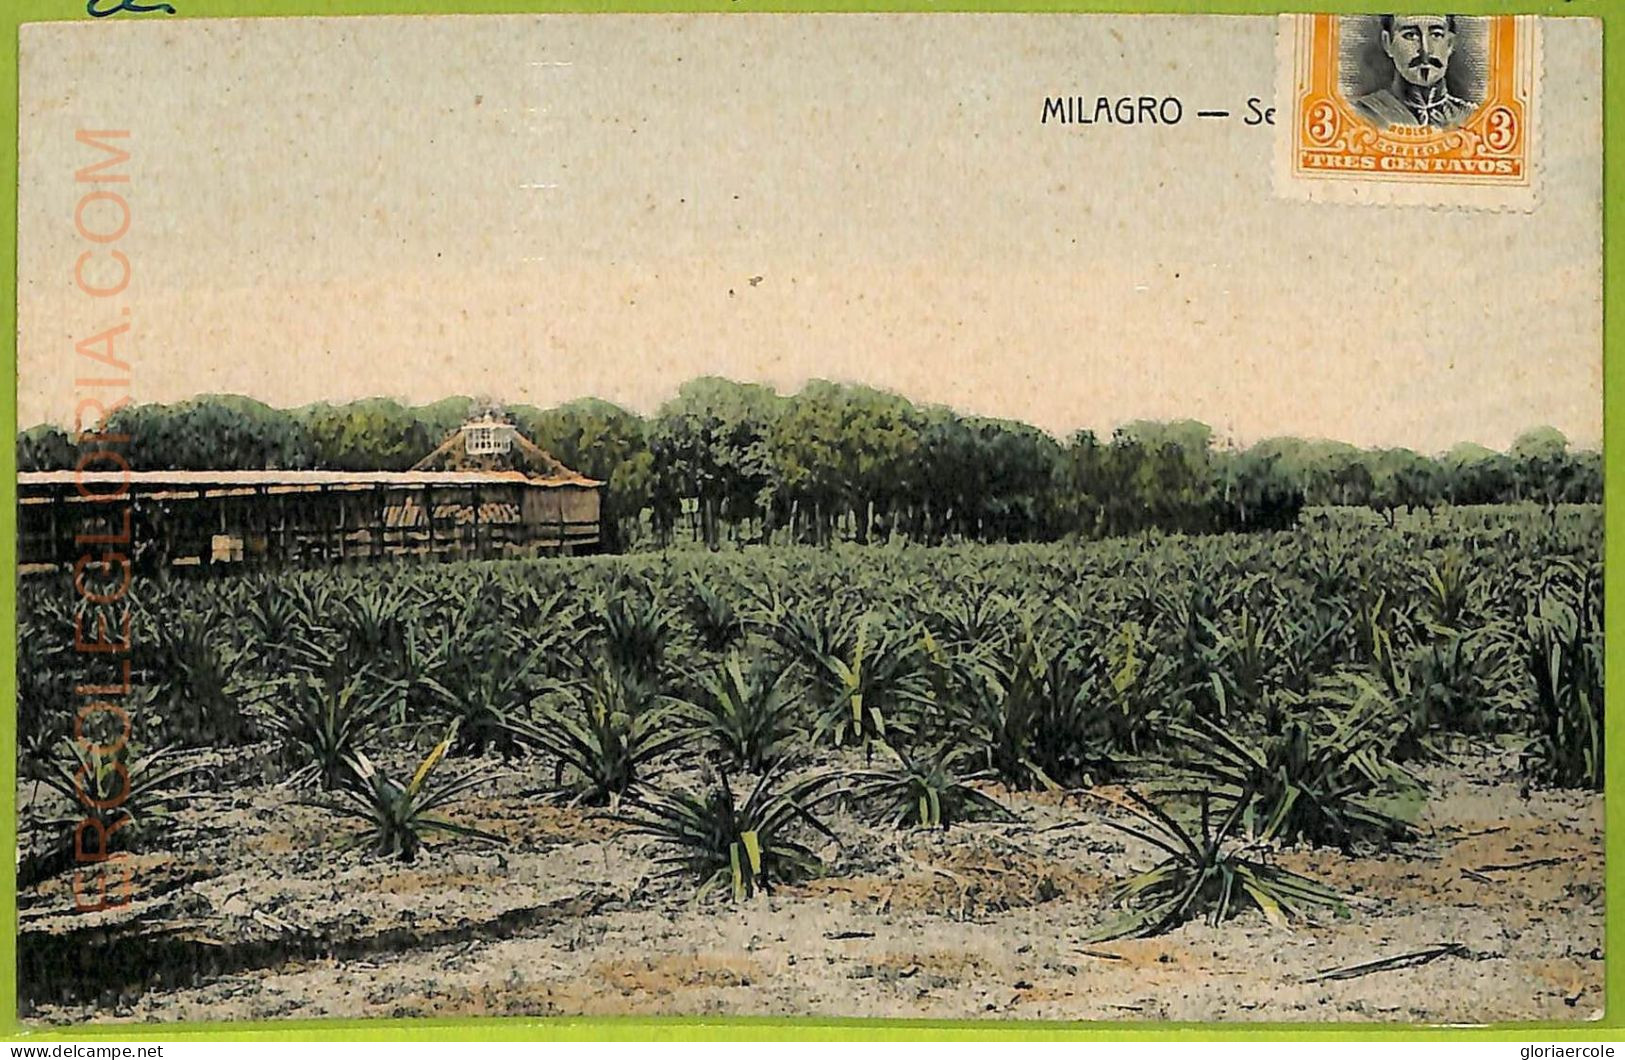 Af2428 - ECUADOR - Vintage Postcard - Milagro - 1907 - Ecuador